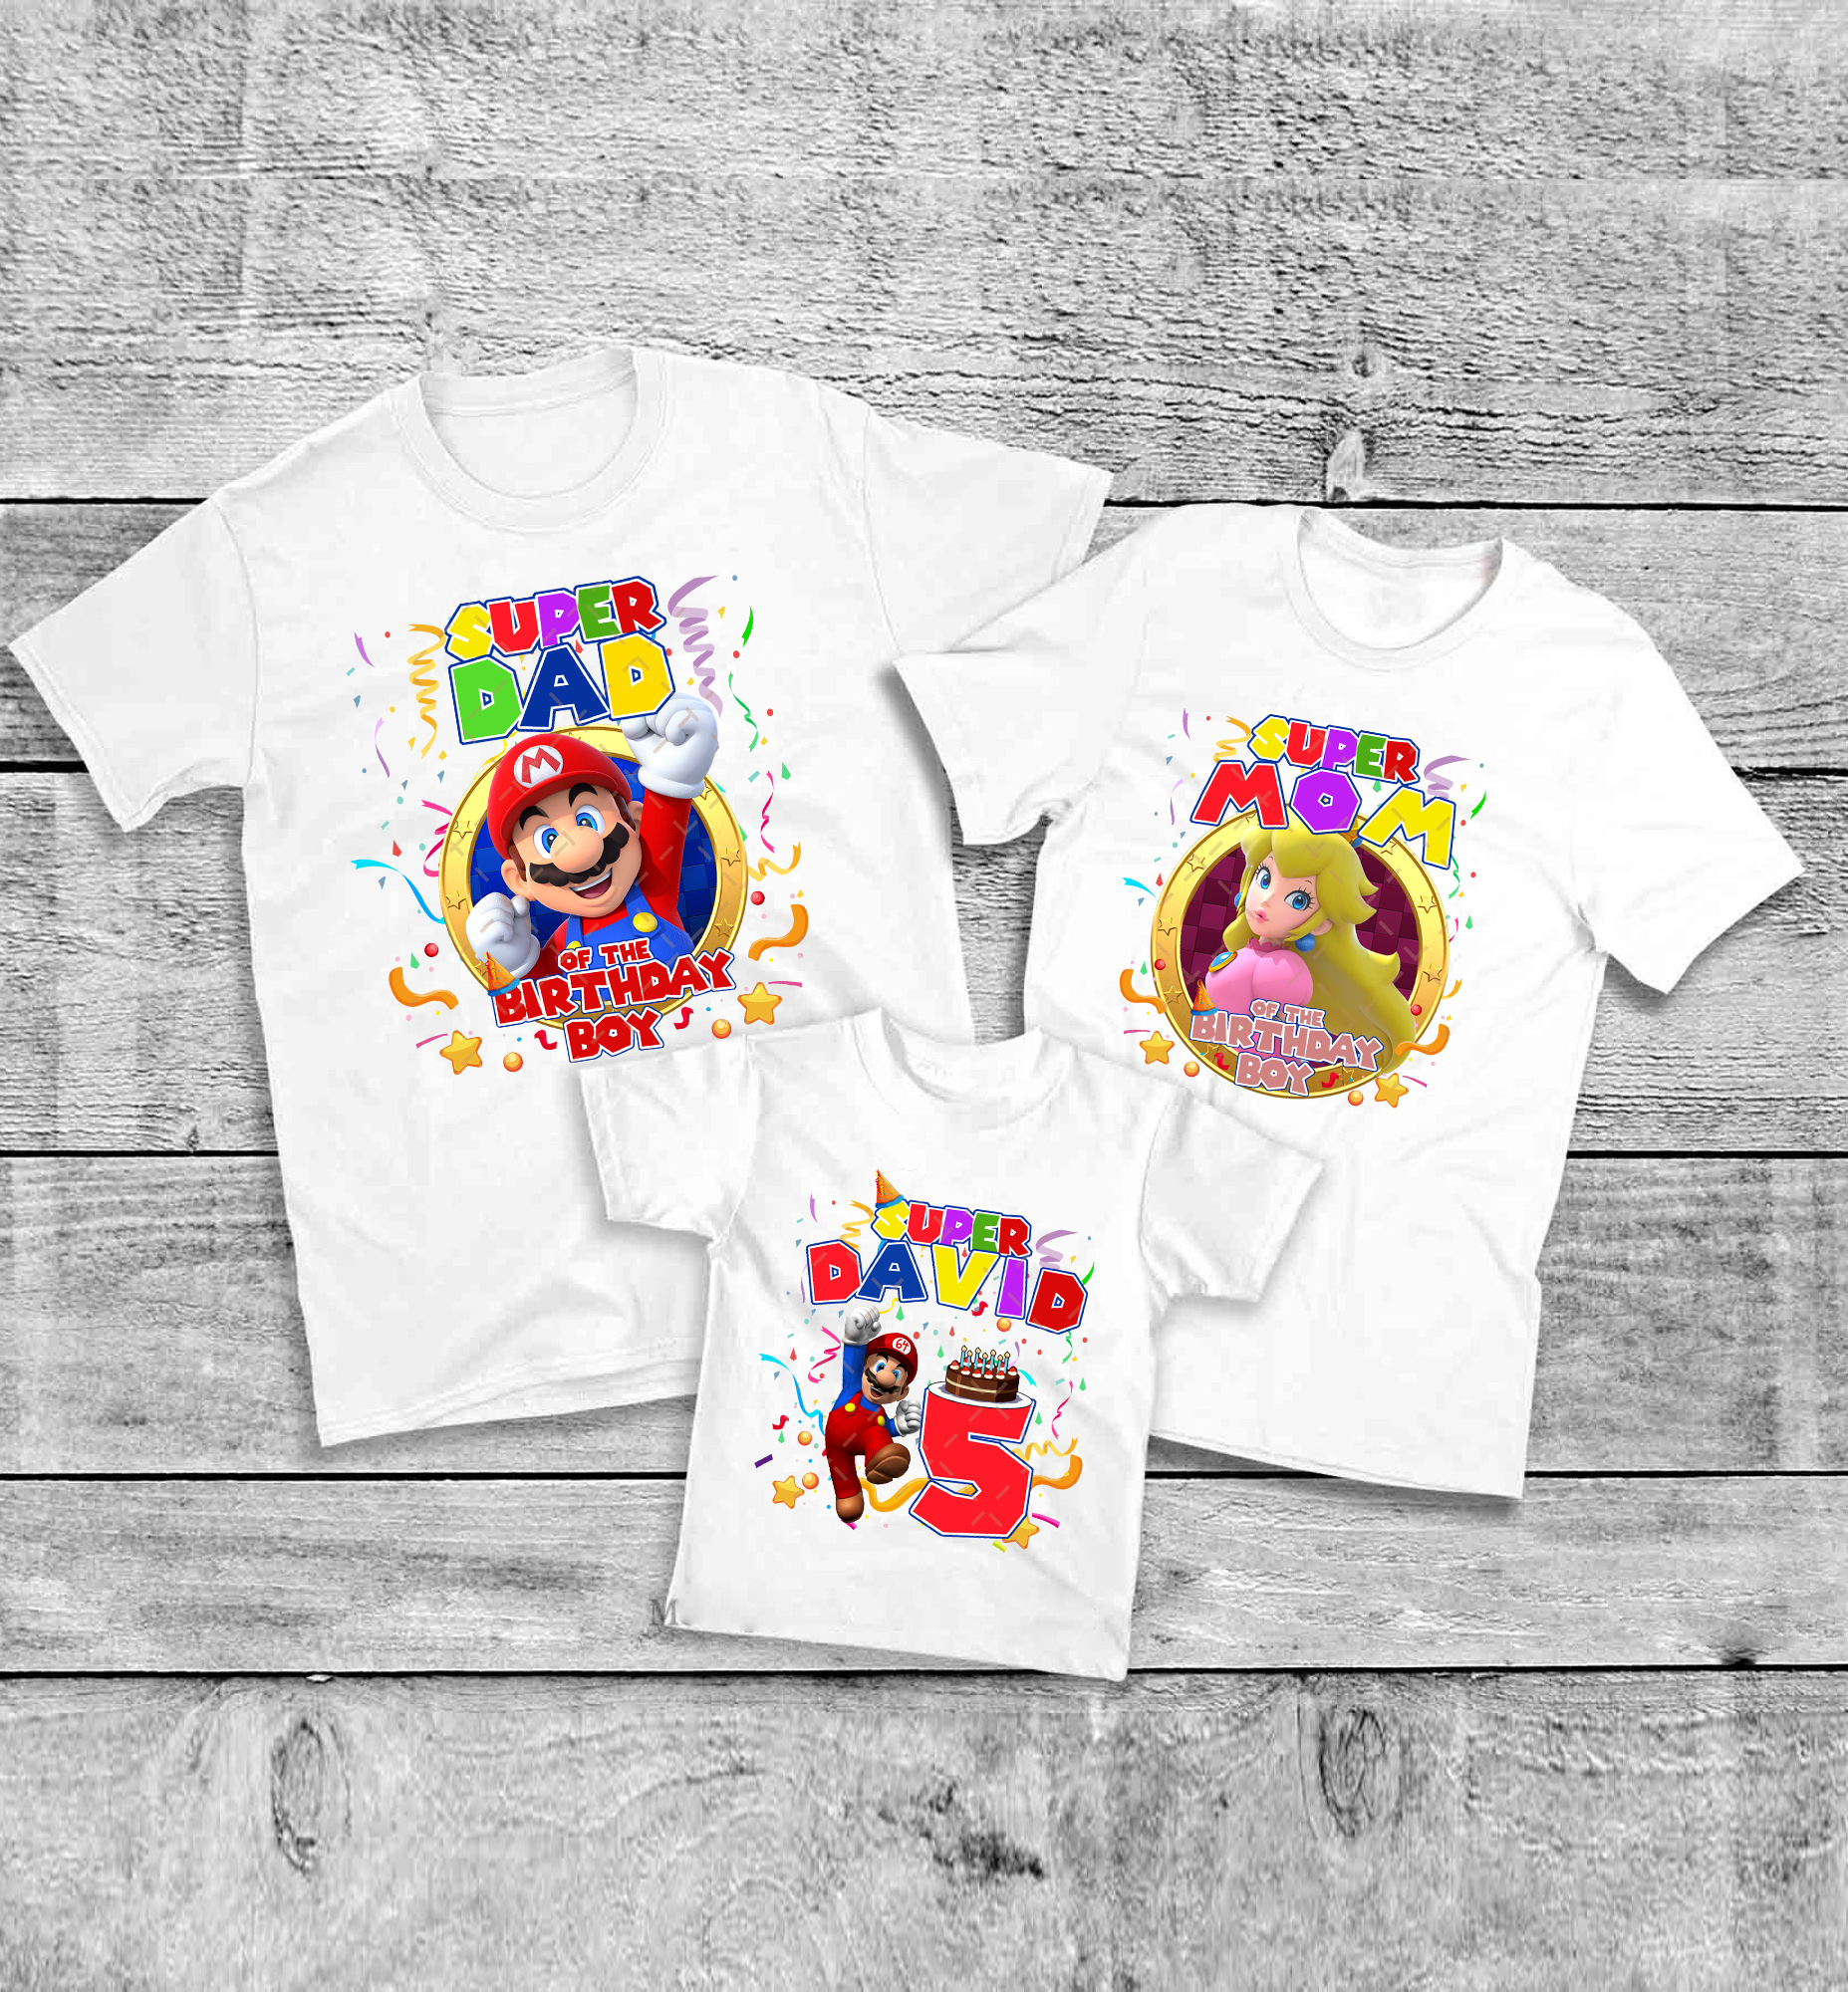 Super Mario Birthday shirt, Mario and Luigi birthday shirt, Family matching Shirt